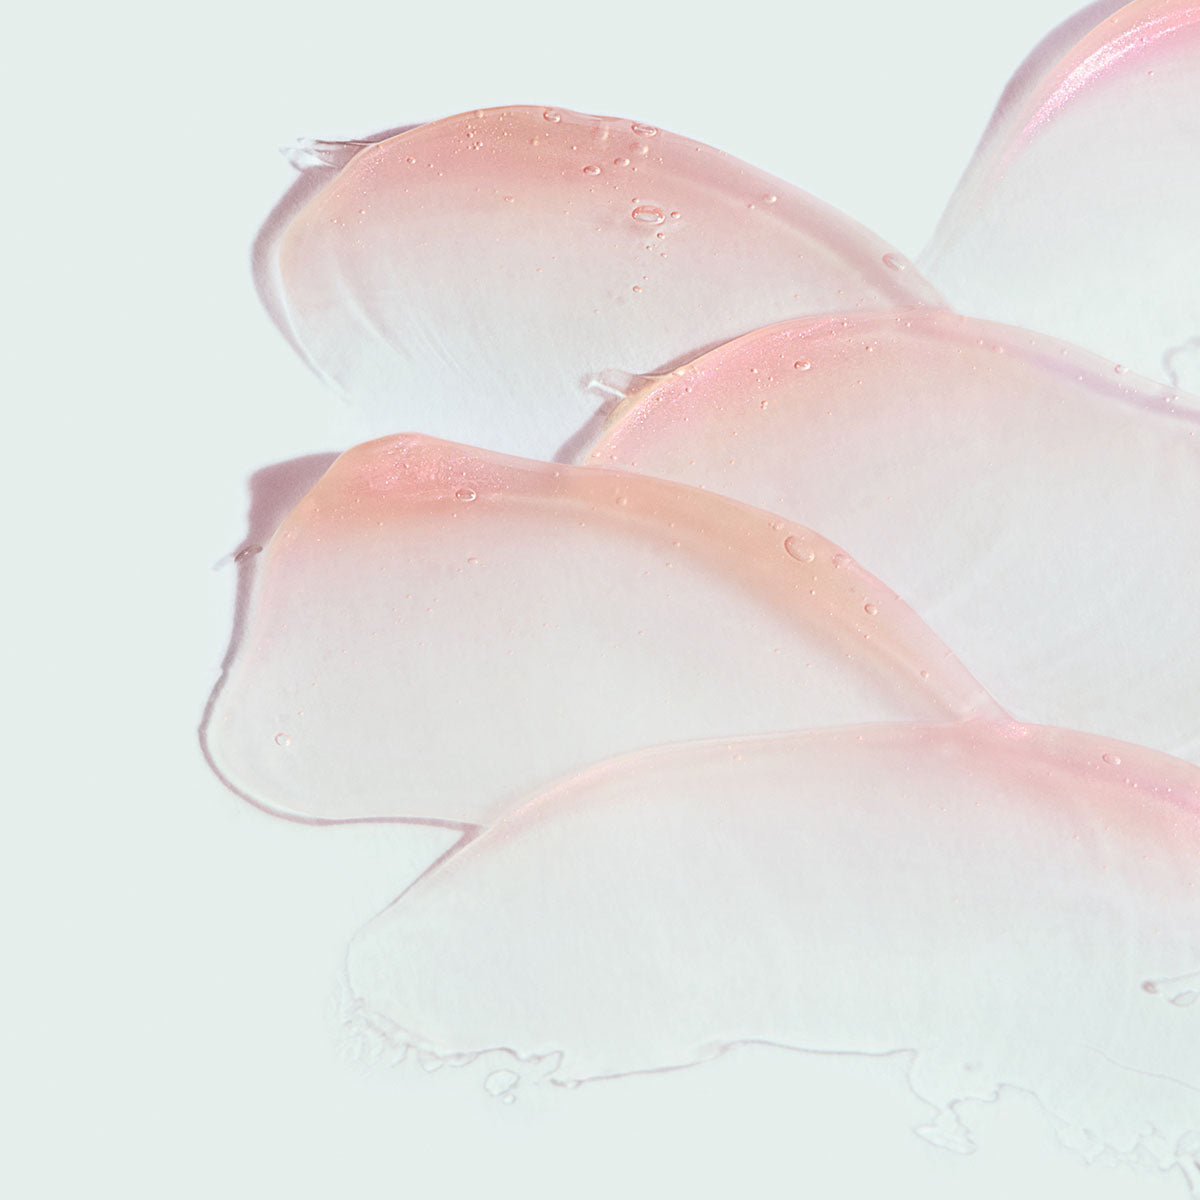 ORMEDIC® sheer pink lip enhancement complex